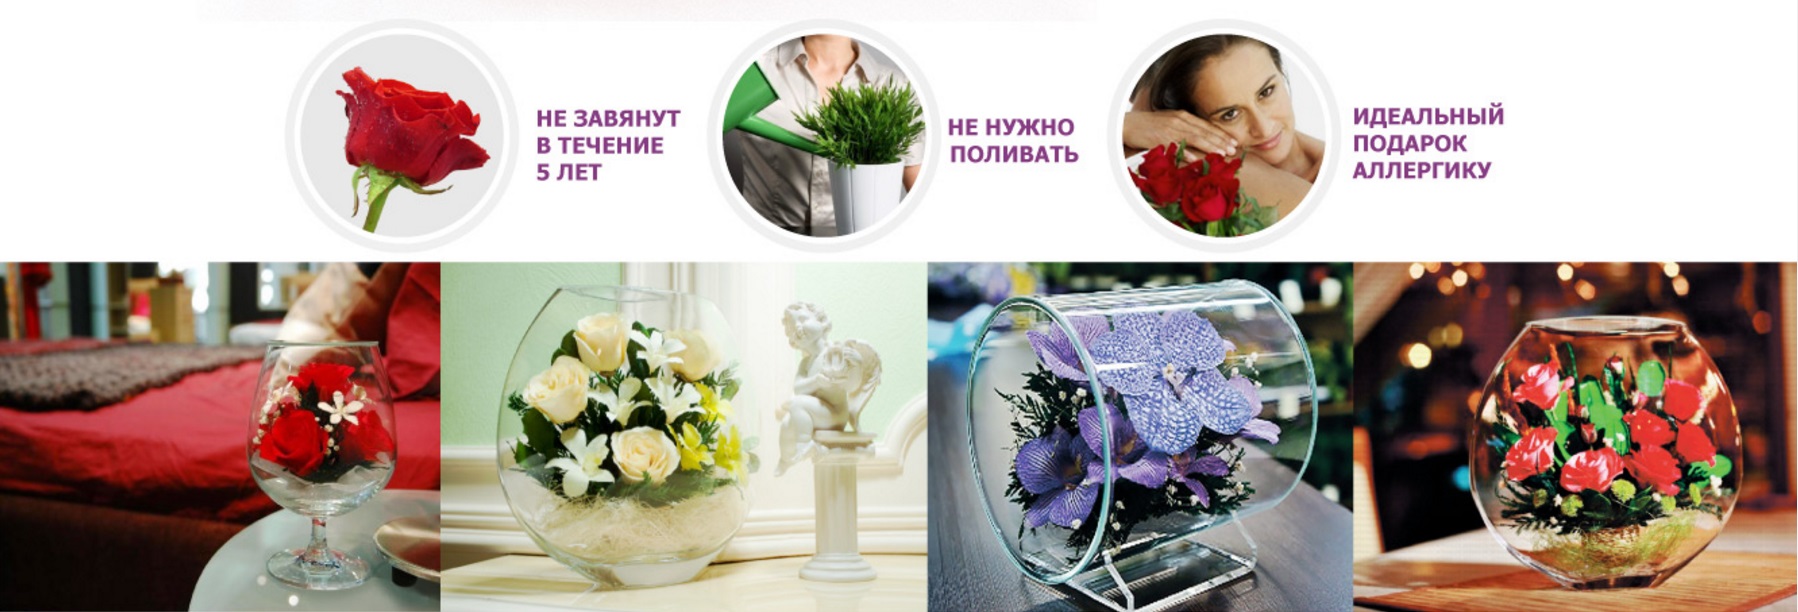 Купить цветы в стекле в интернет-магазине shikkra.ru